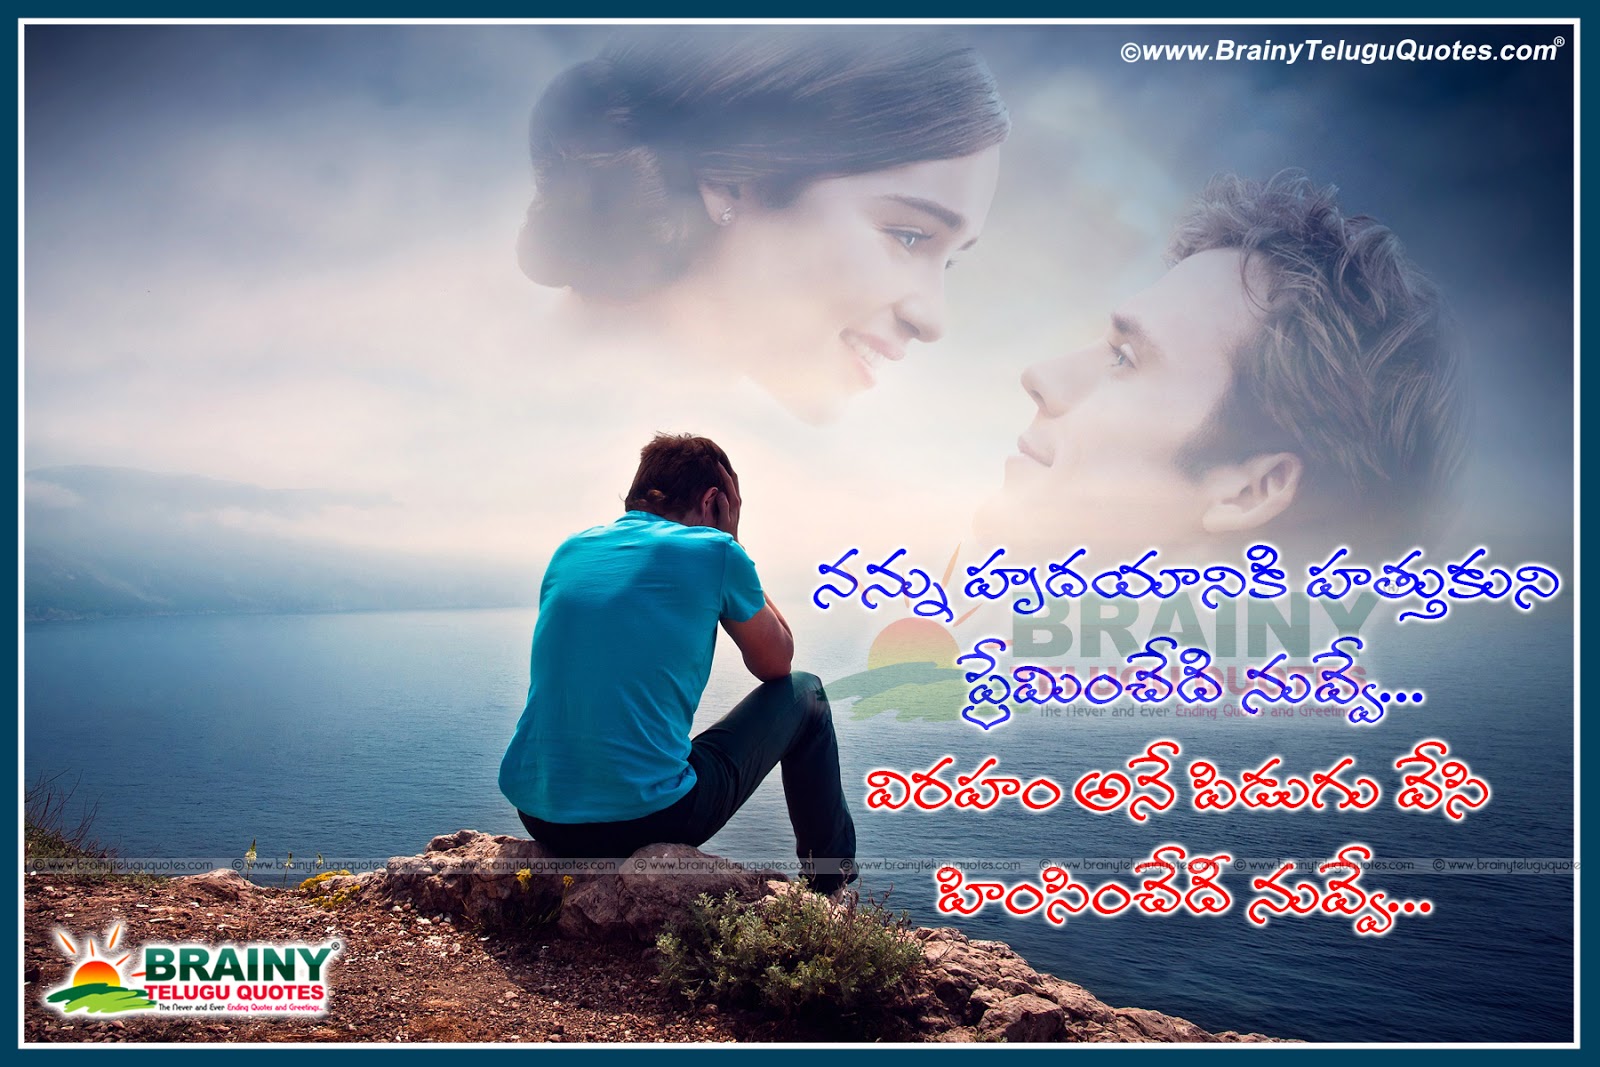 Alone Love Failure Quotes in Telugu Language I Miss You love Quotations in Telugu Language Love Failure Whatsapp Profile with Telugu Sayings